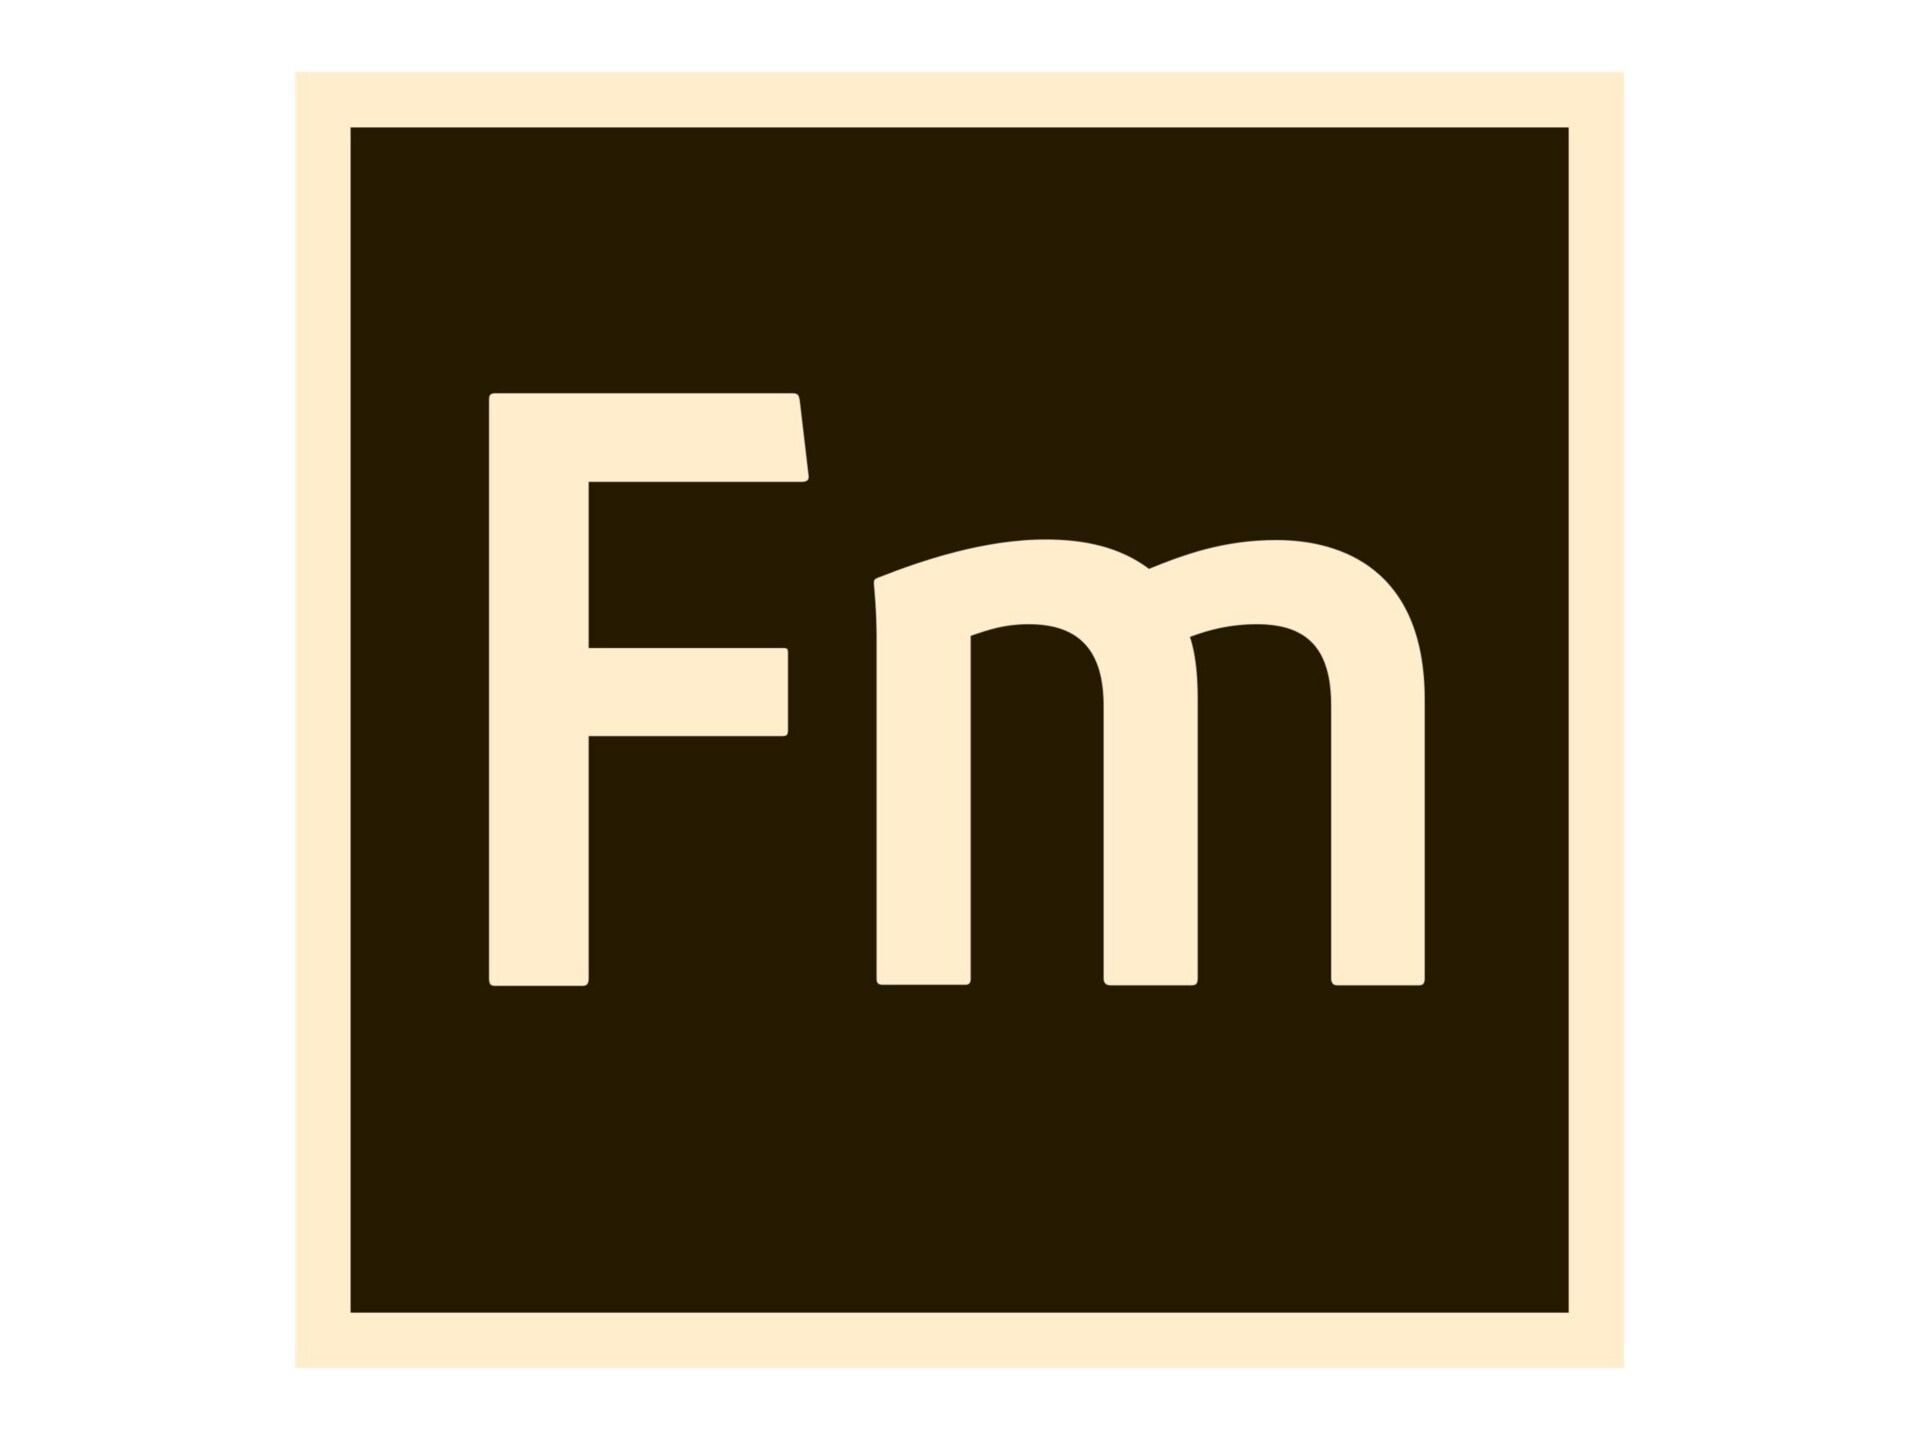 Adobe FrameMaker Publishing Server for enterprise - Subscription New (annual) - 1 user